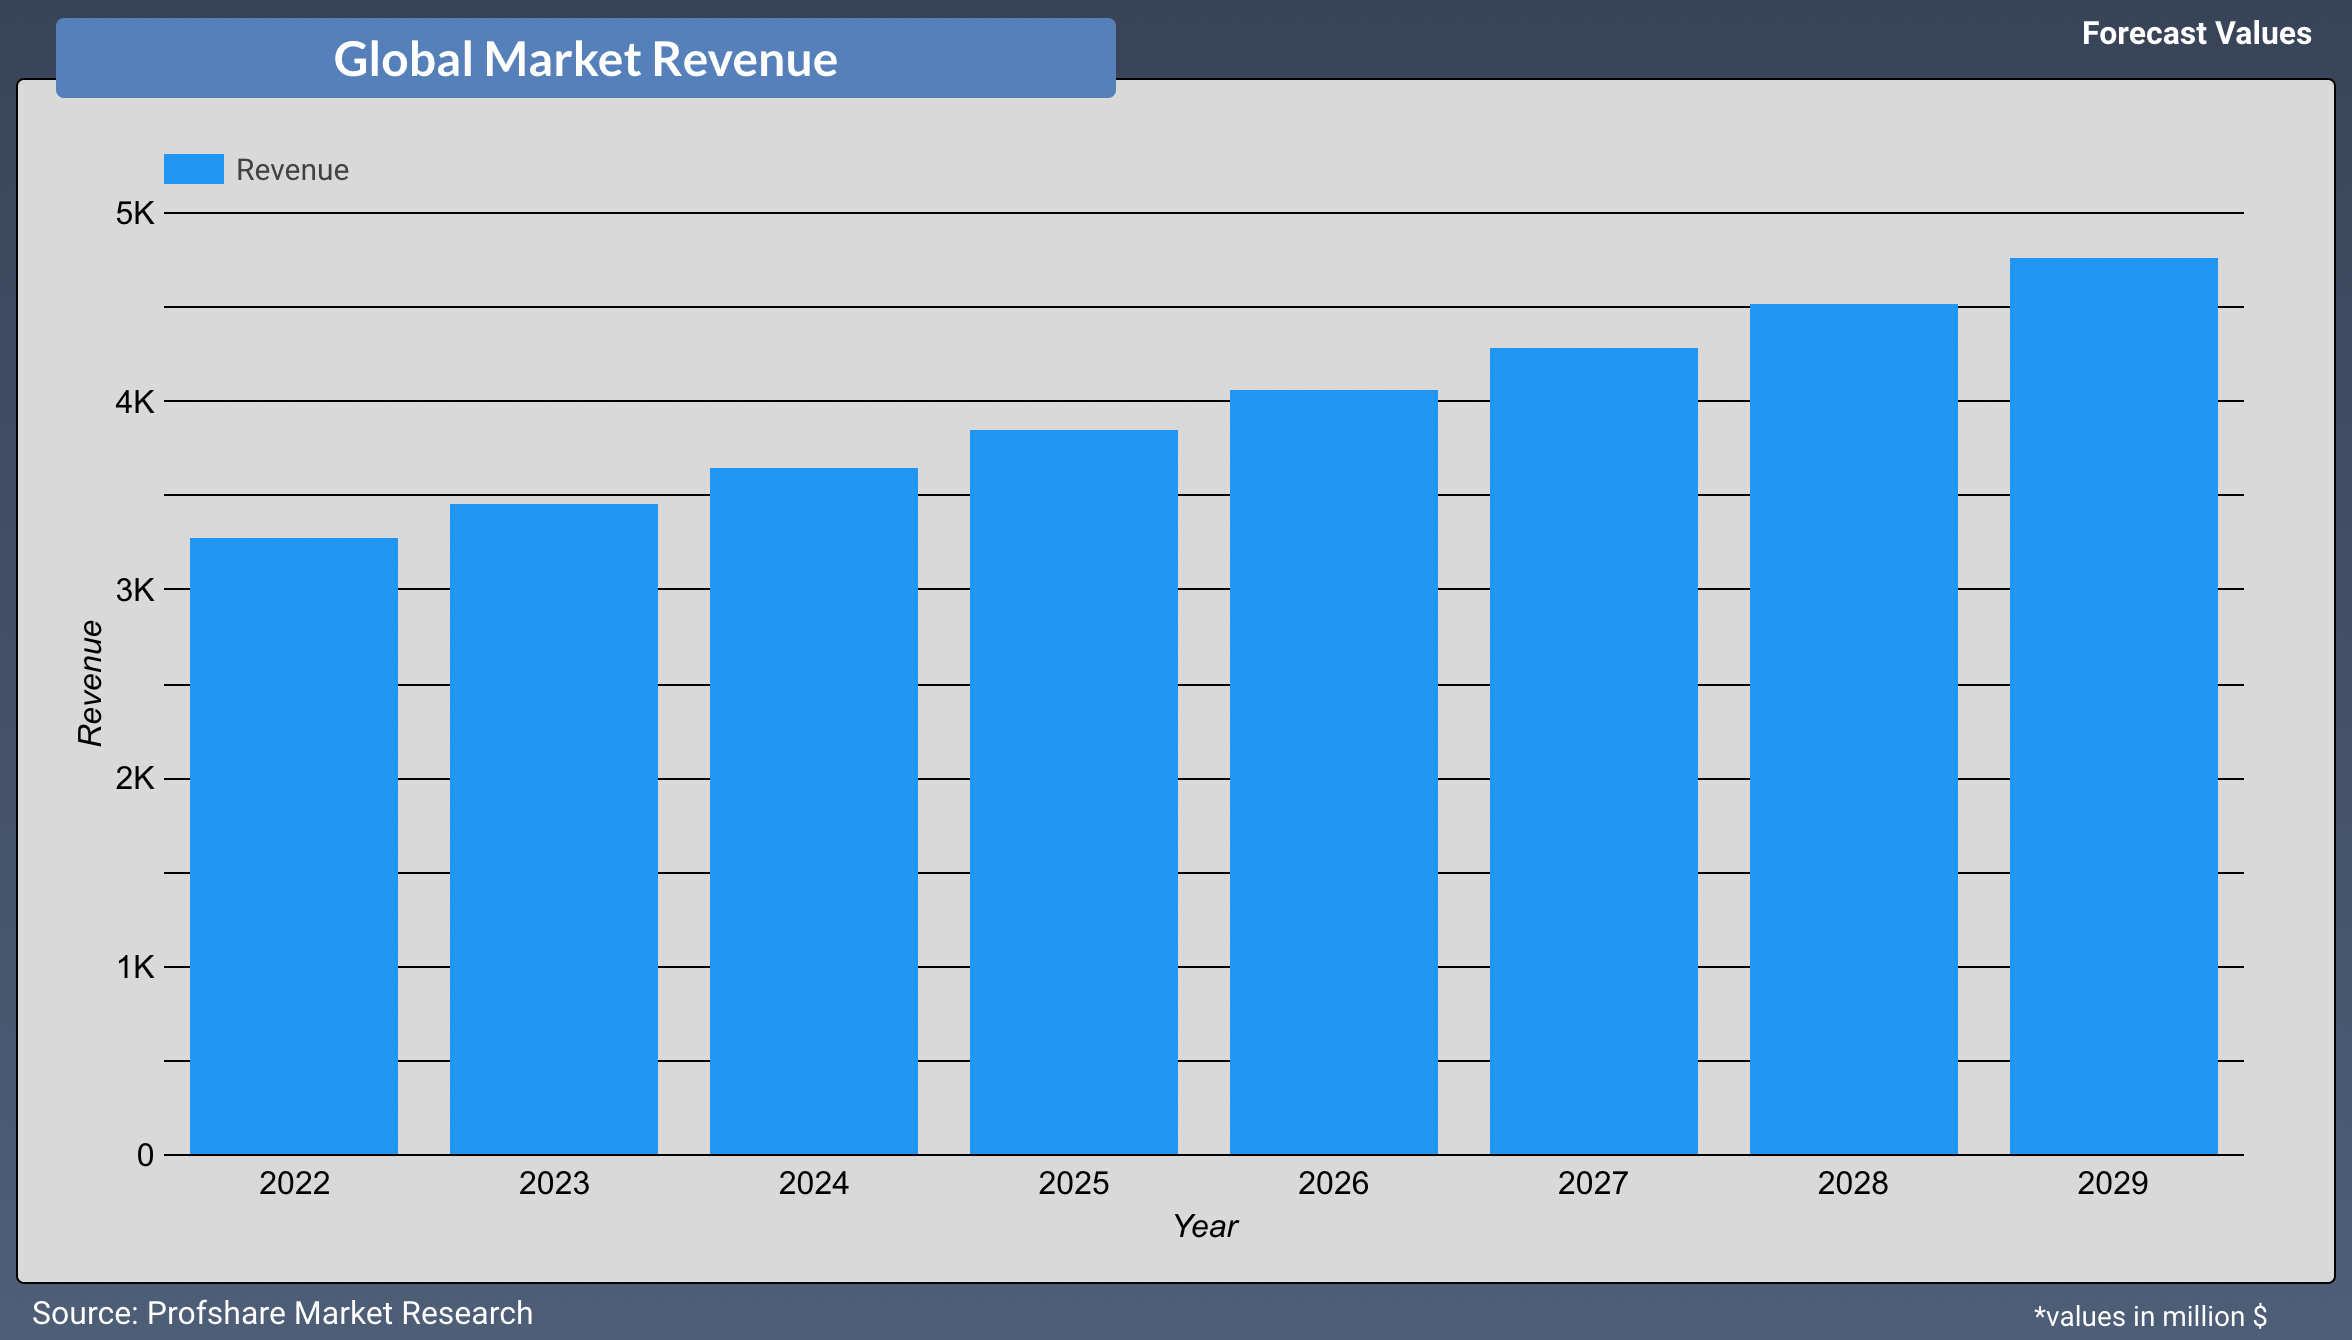 कोविड-19 के बाद हैंड ट्रक की बाजार मूल्य की अधिकतम वृद्धि की उम्मीद है, 45,000 मिलियन अमेरिकी डॉलर से अधिक